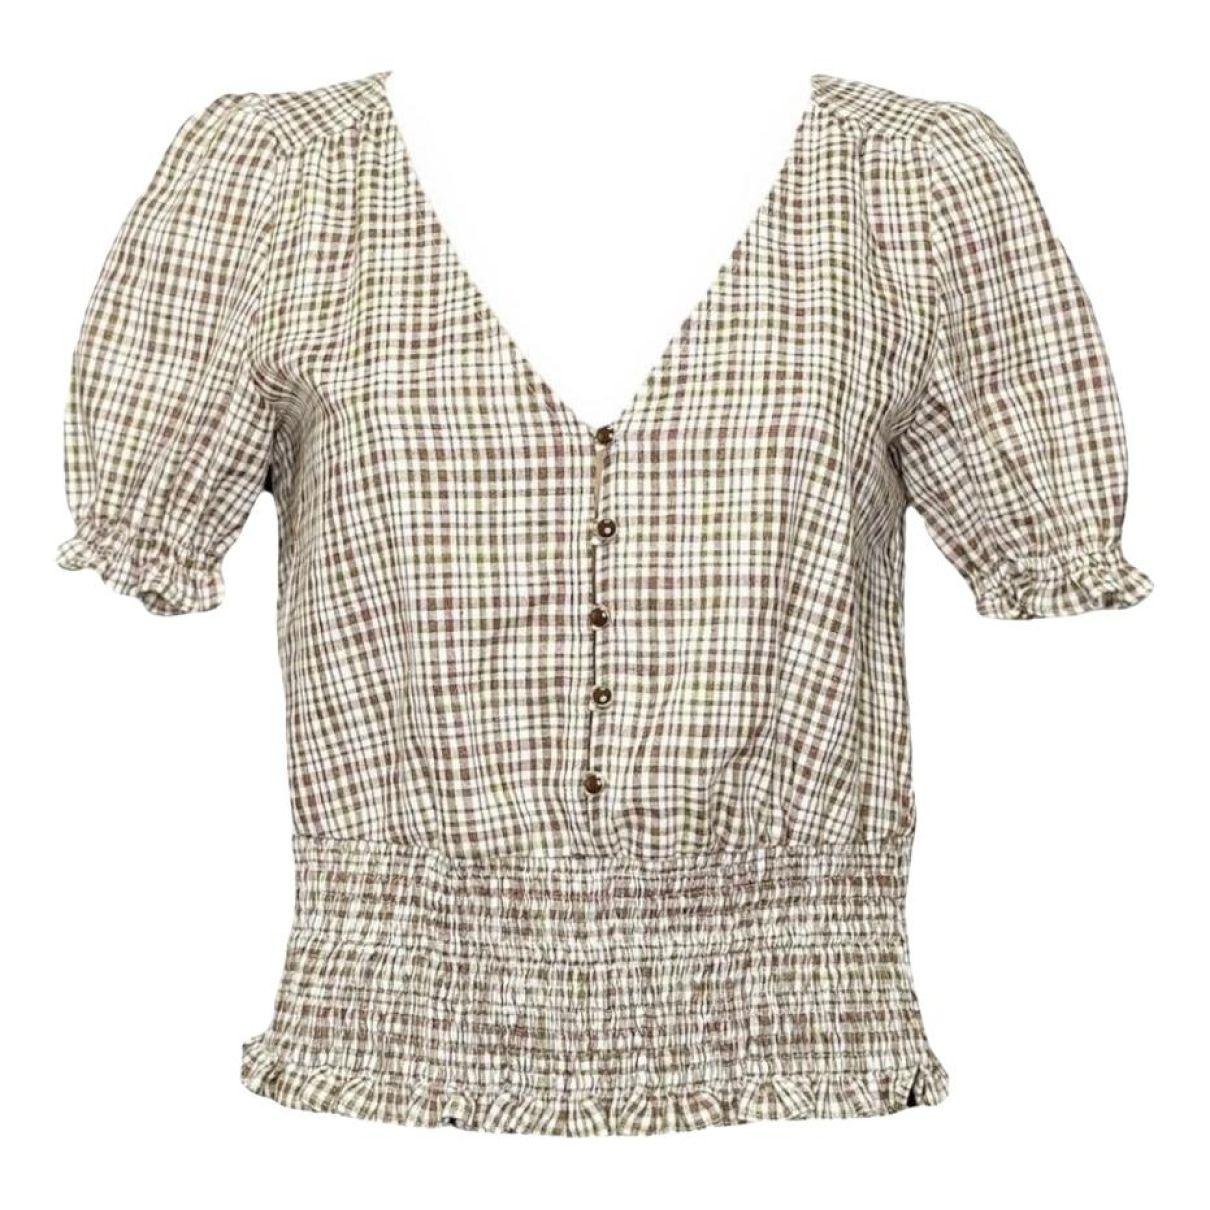 Linen blouse by SEZANE